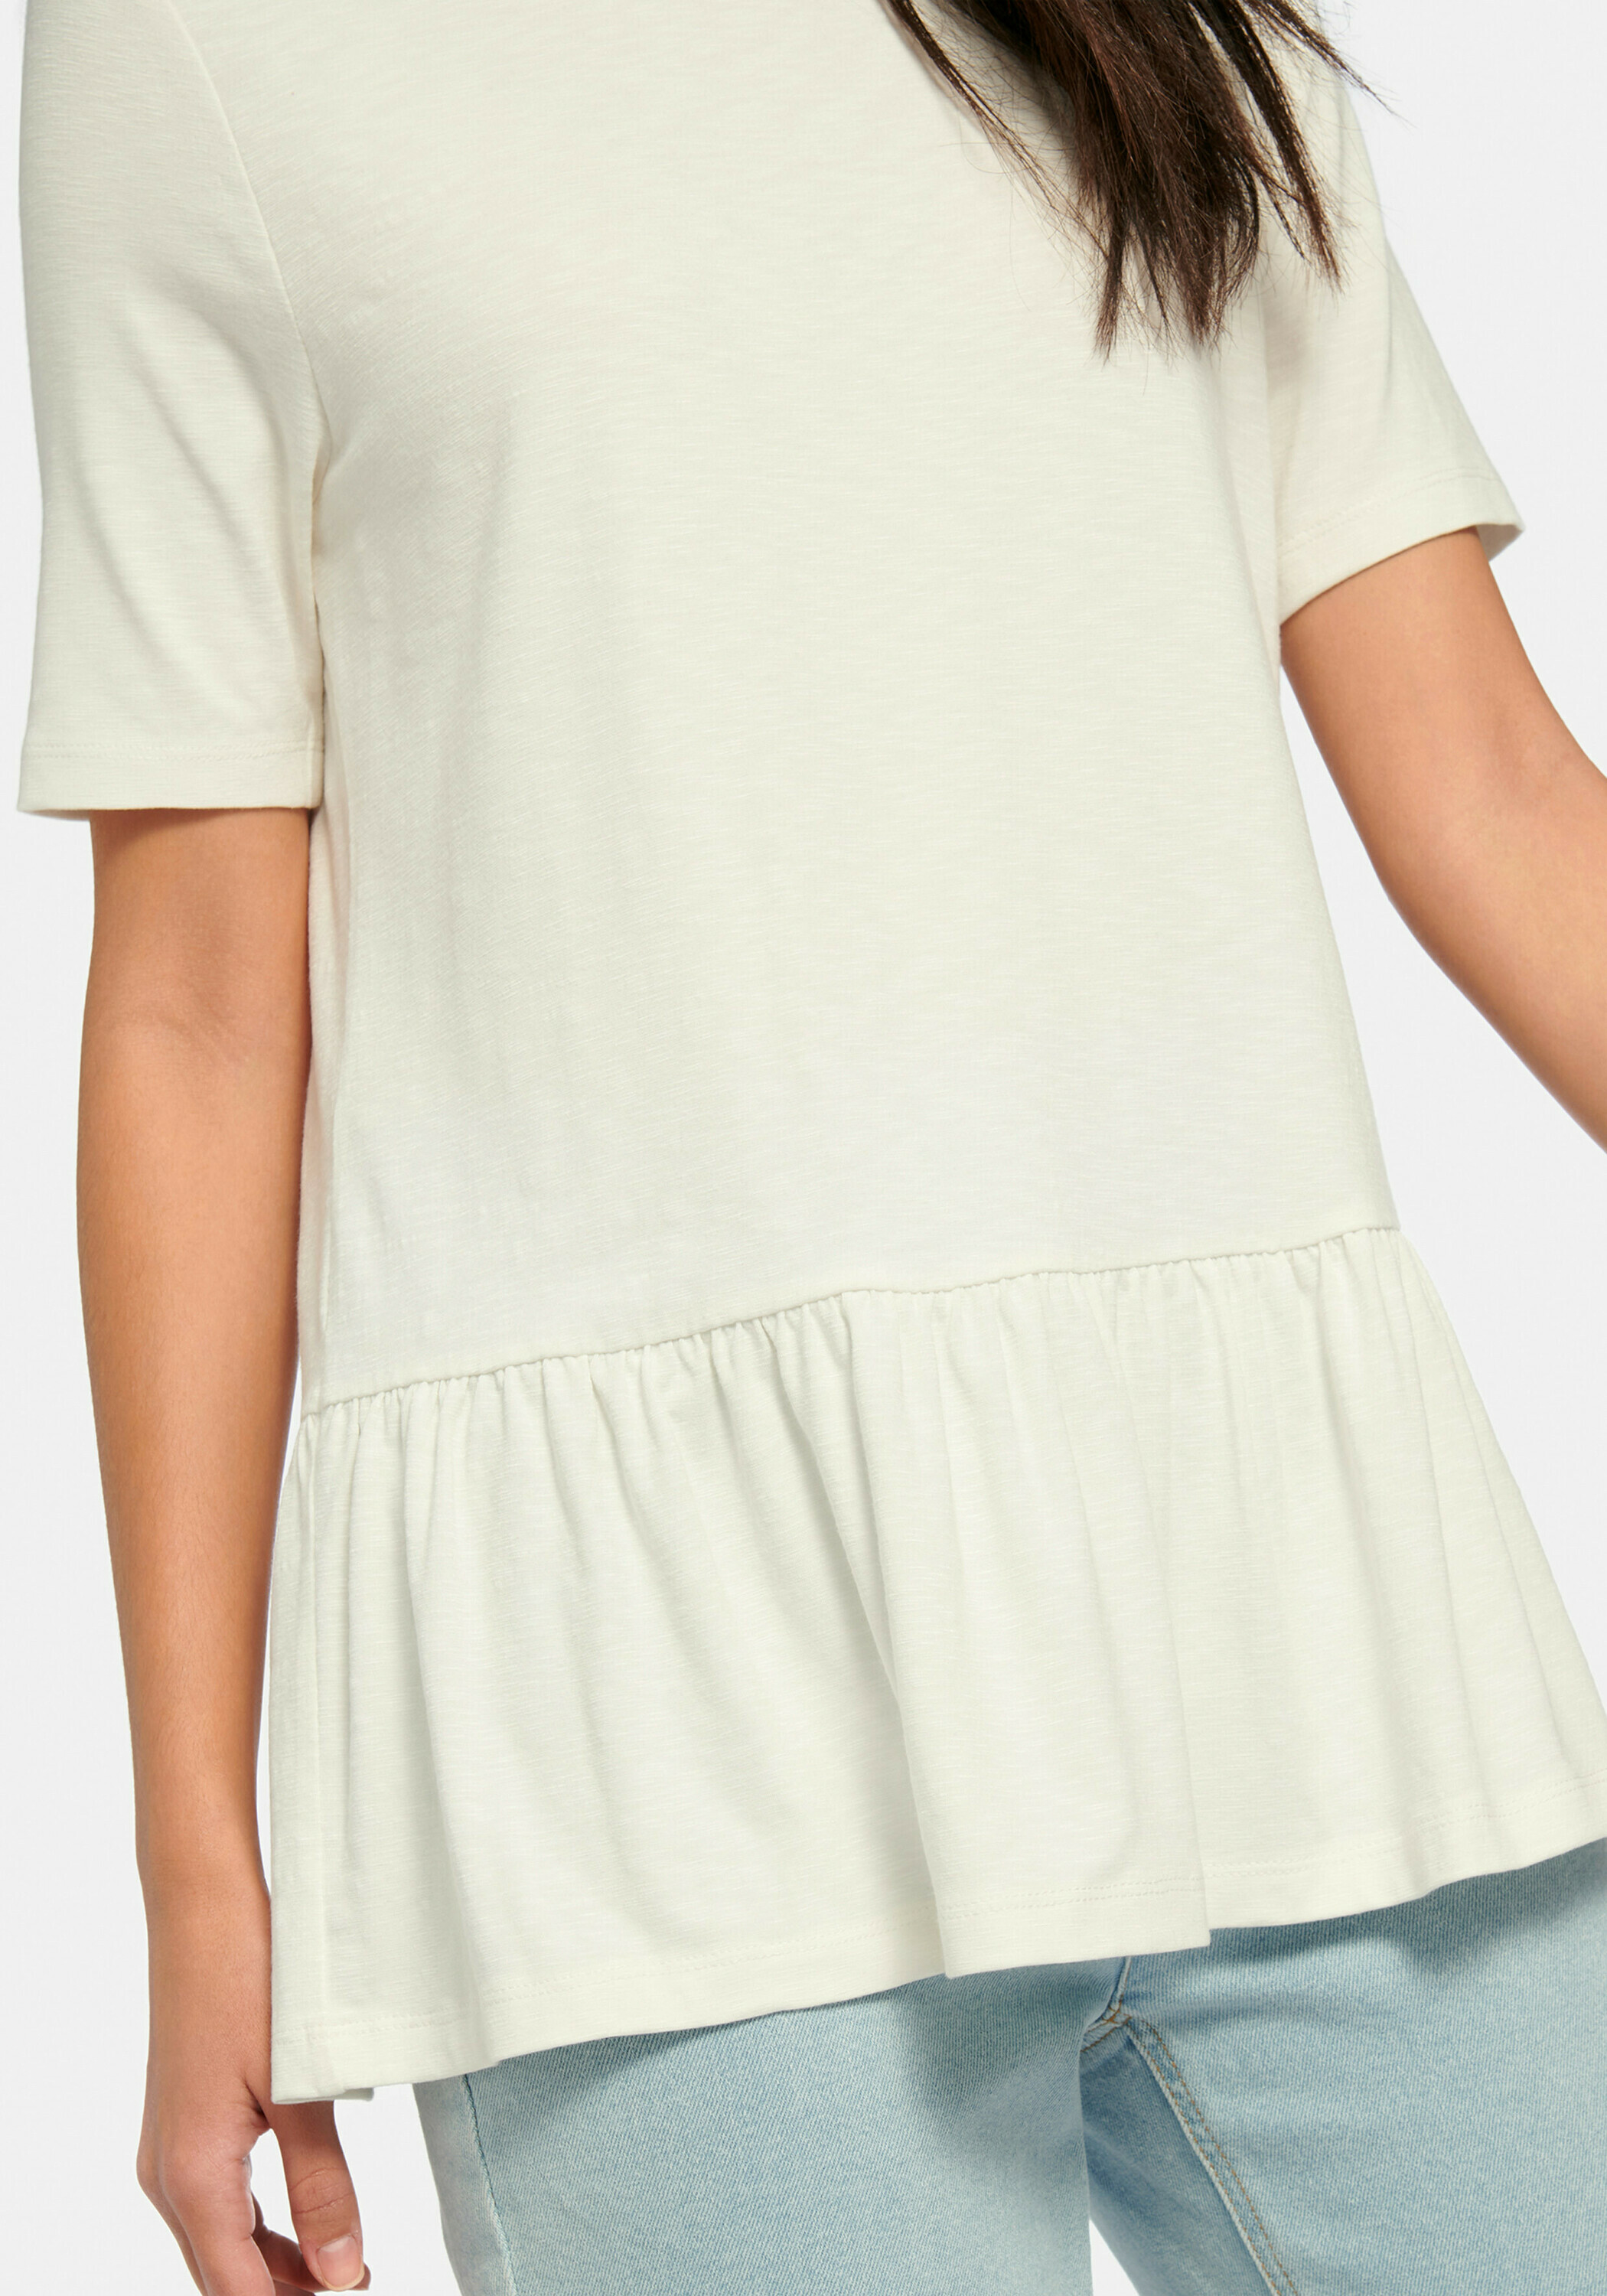 MYBC Rundhals-Shirt in Weiß, Offwhite 